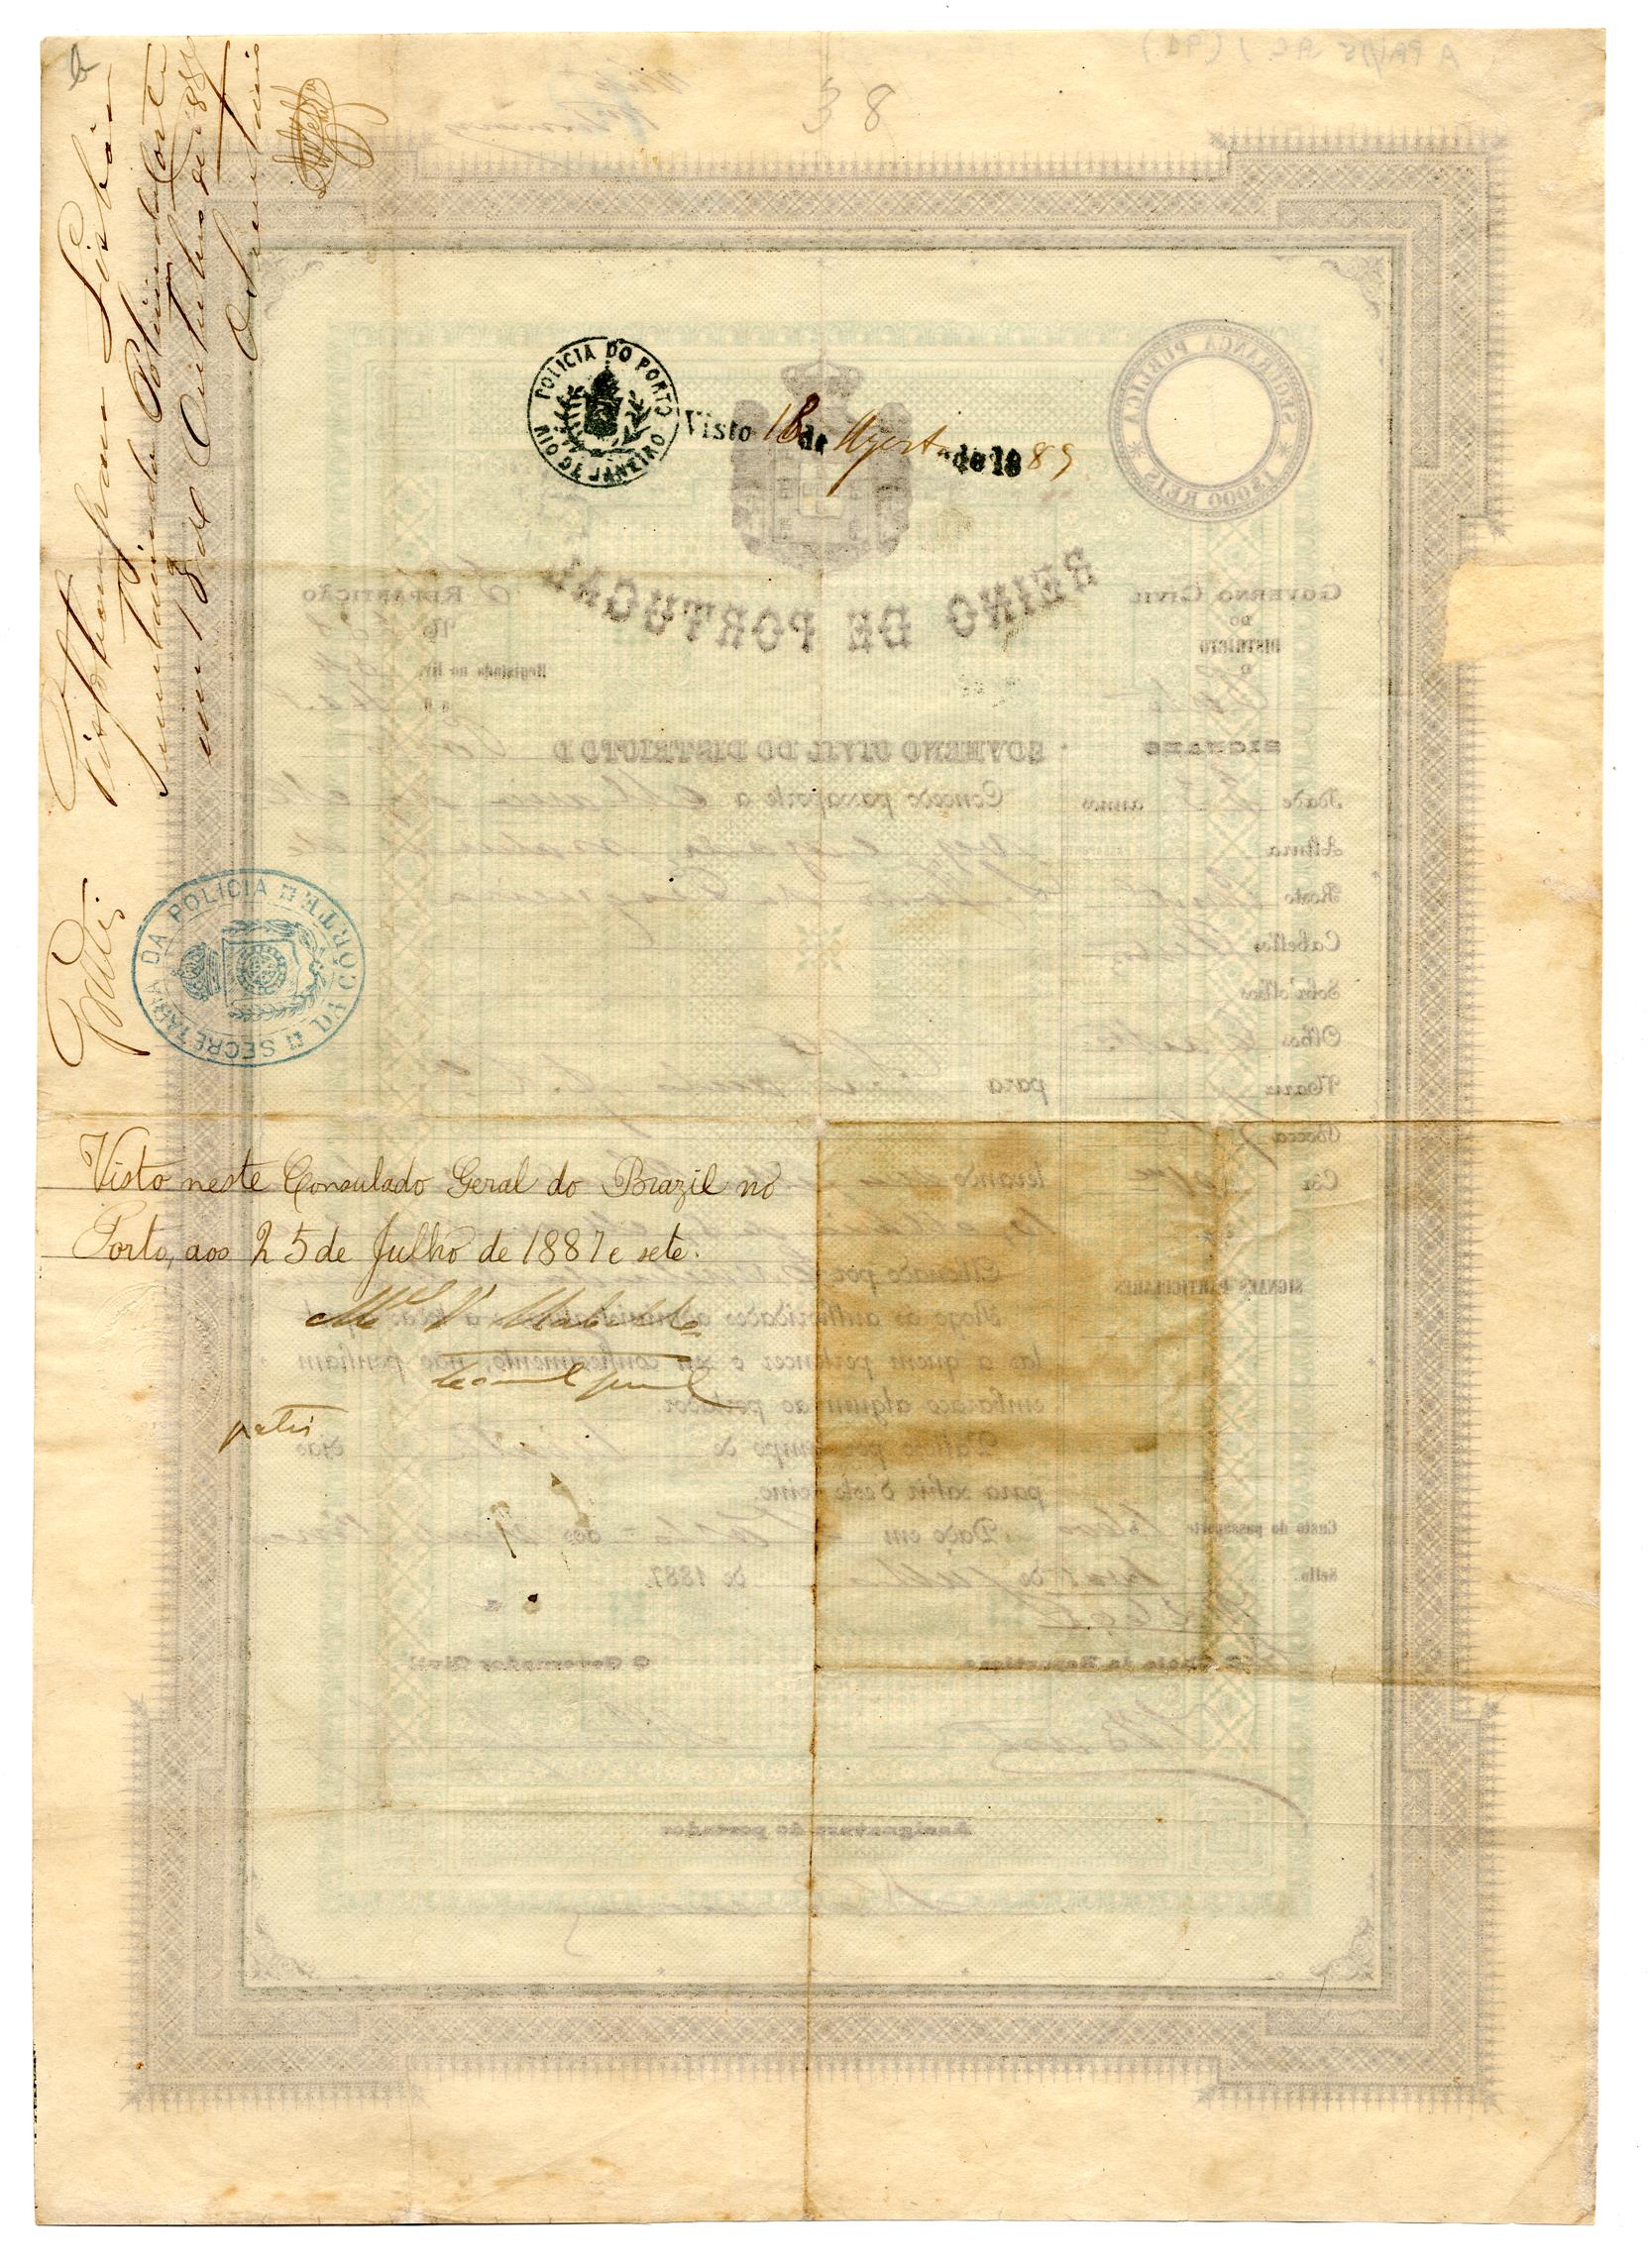 Passaporte de Maria das Neves